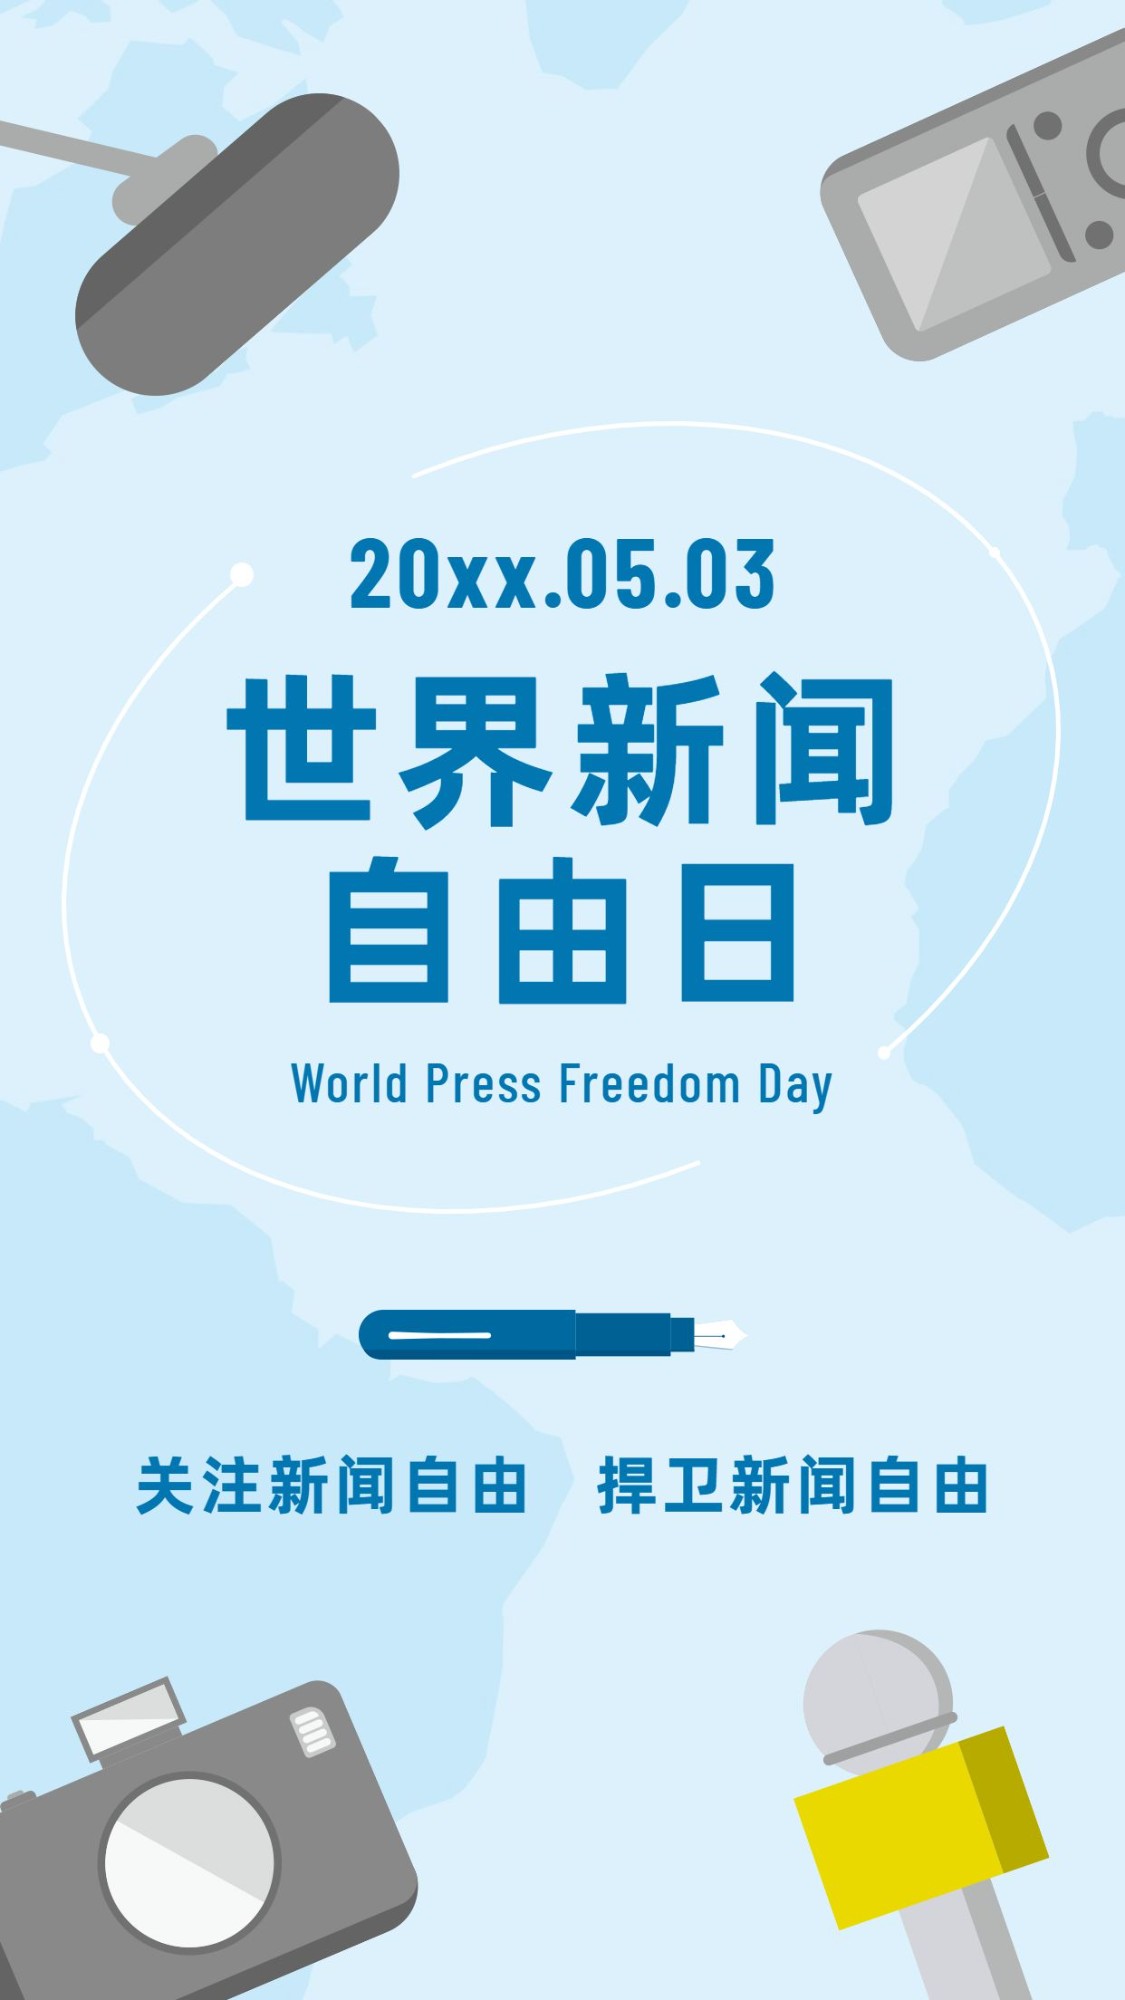 世界新闻自由日节日宣传手绘手机海报预览效果